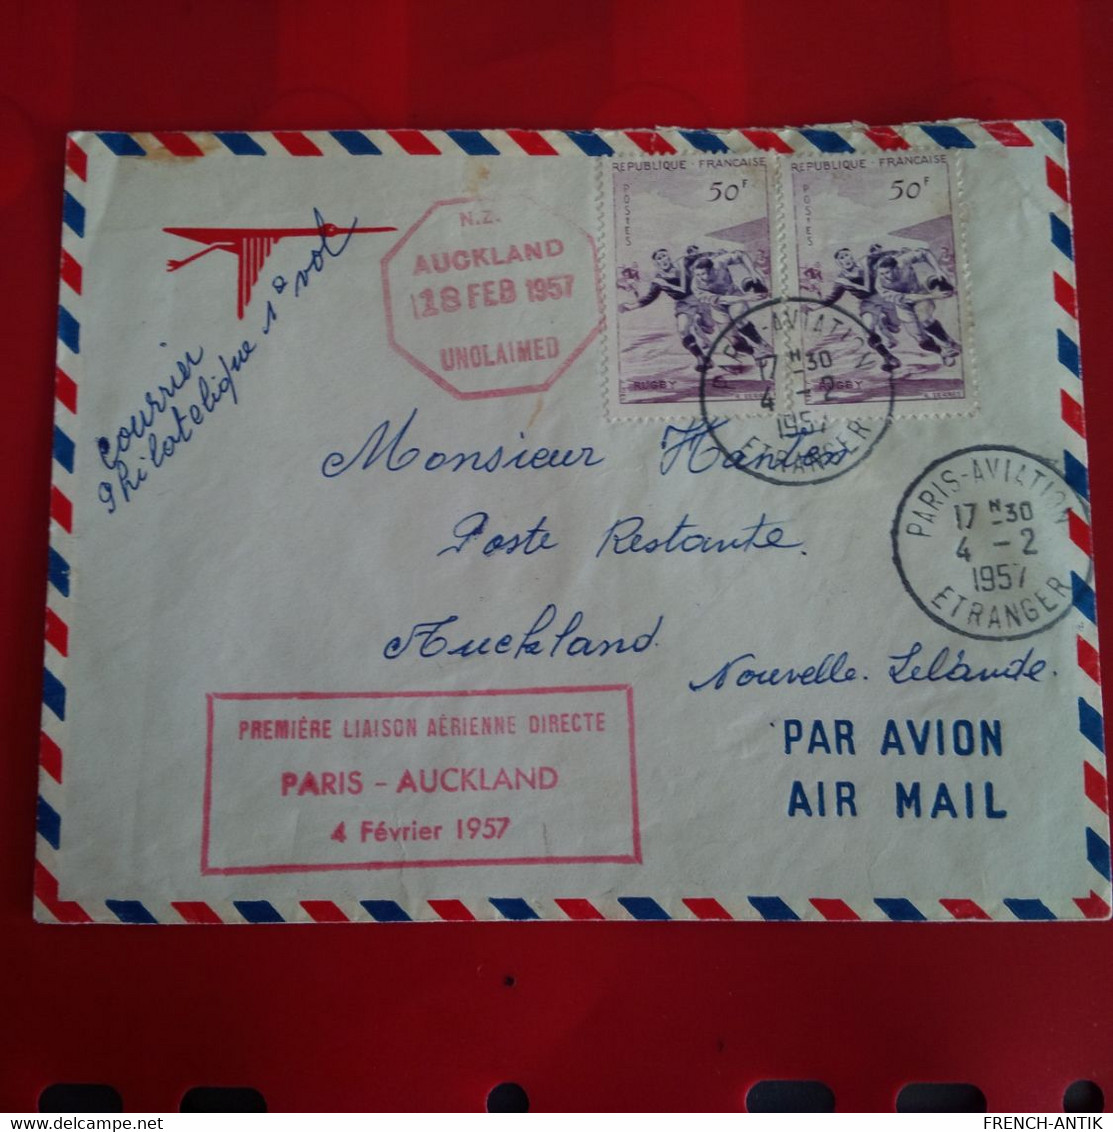 LETTRE PARIS AUCKLAND PREMIER LIAISON AERIENNE DIRECTE 1957 - Covers & Documents